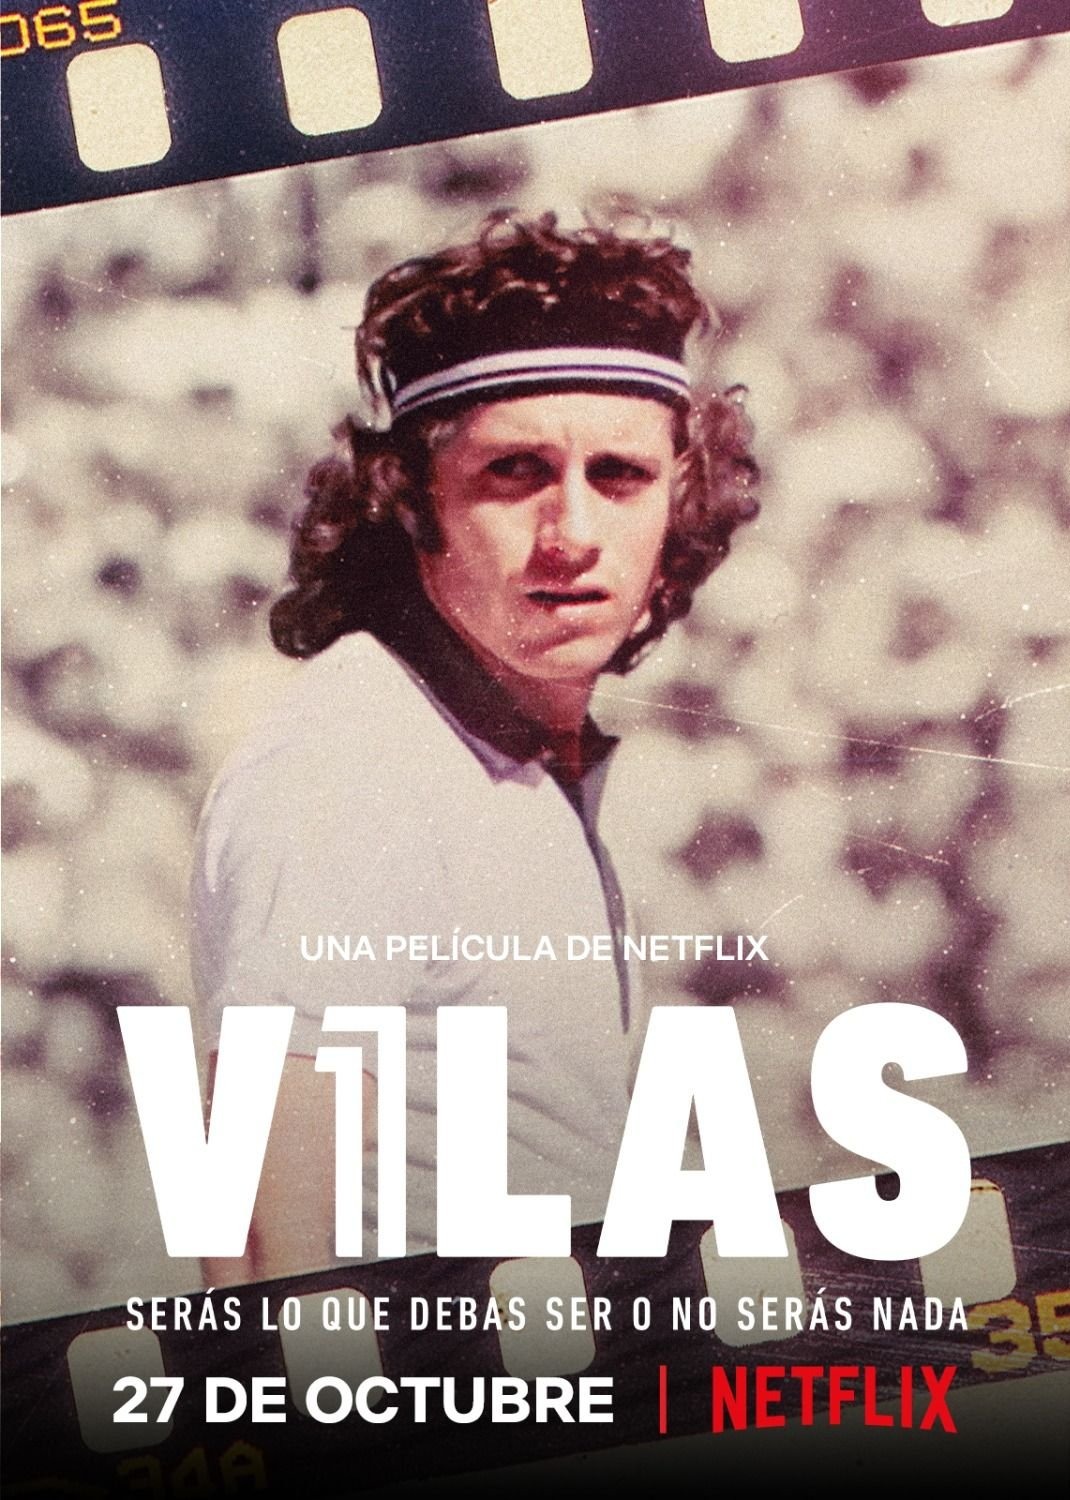 Extra Large TV Poster Image for Vilas: Serás lo que debas ser o no serás nada 